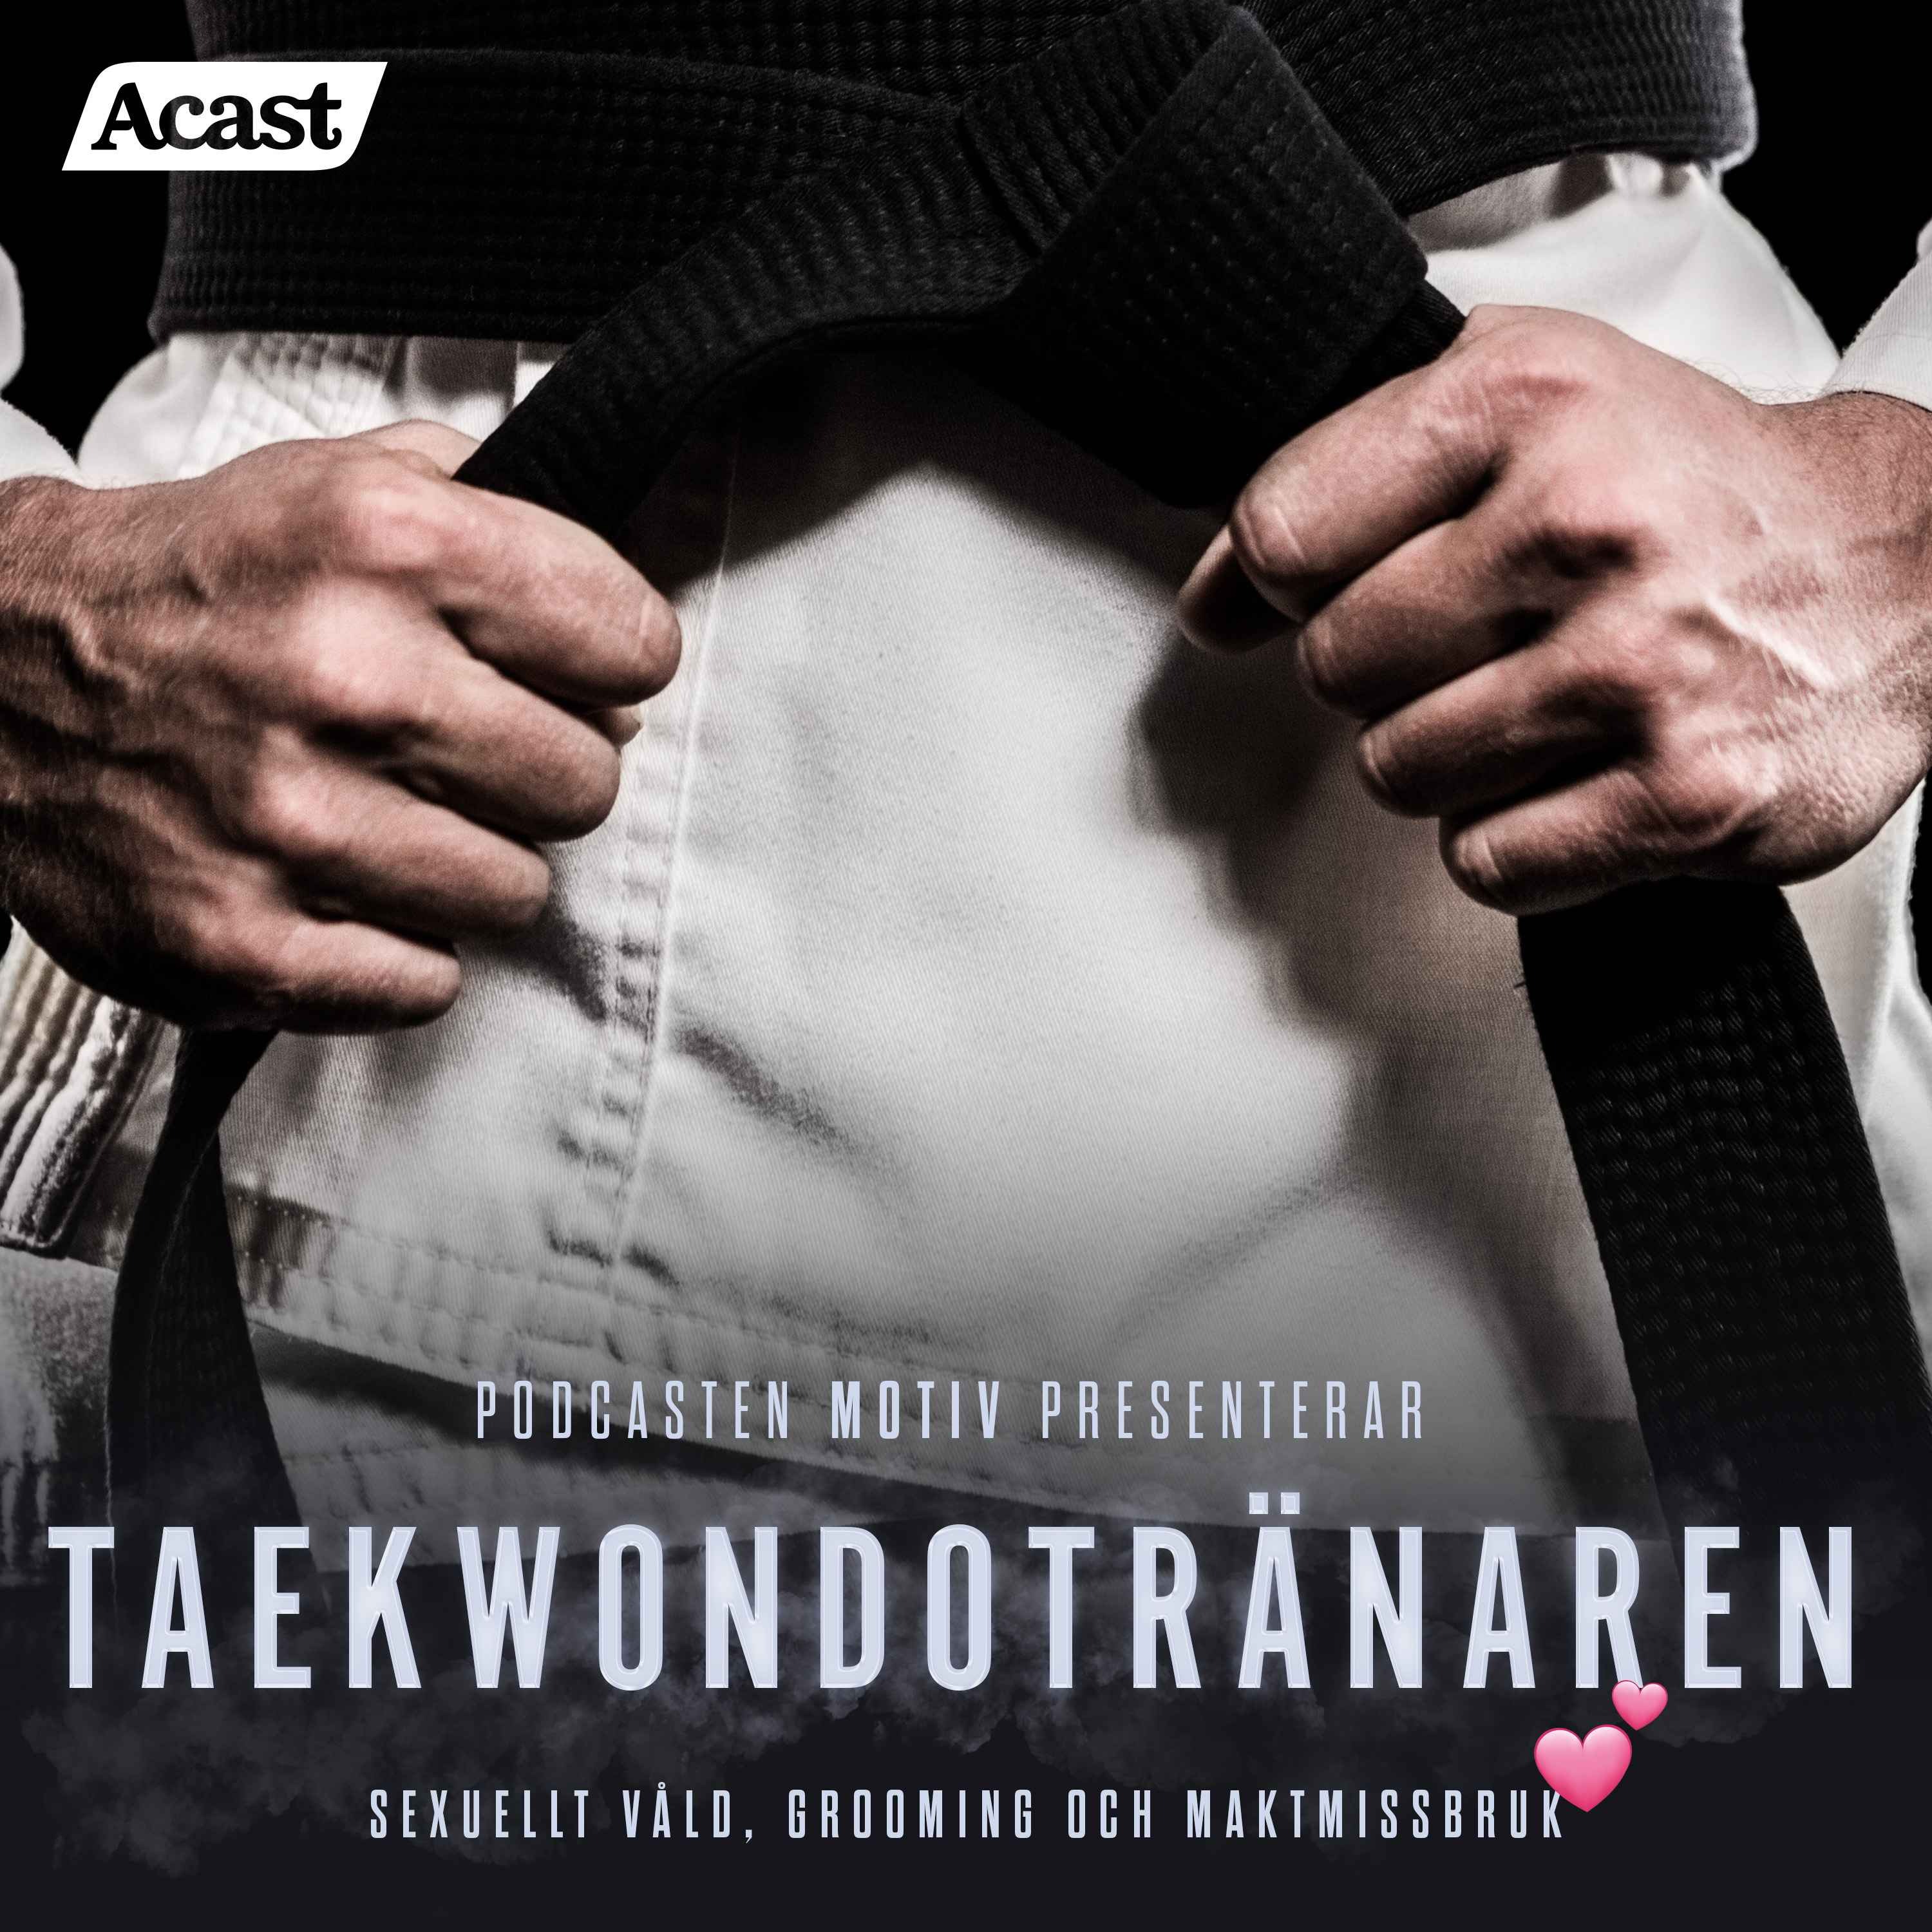 Motiv: ”Taekwondotränaren” – Teaser